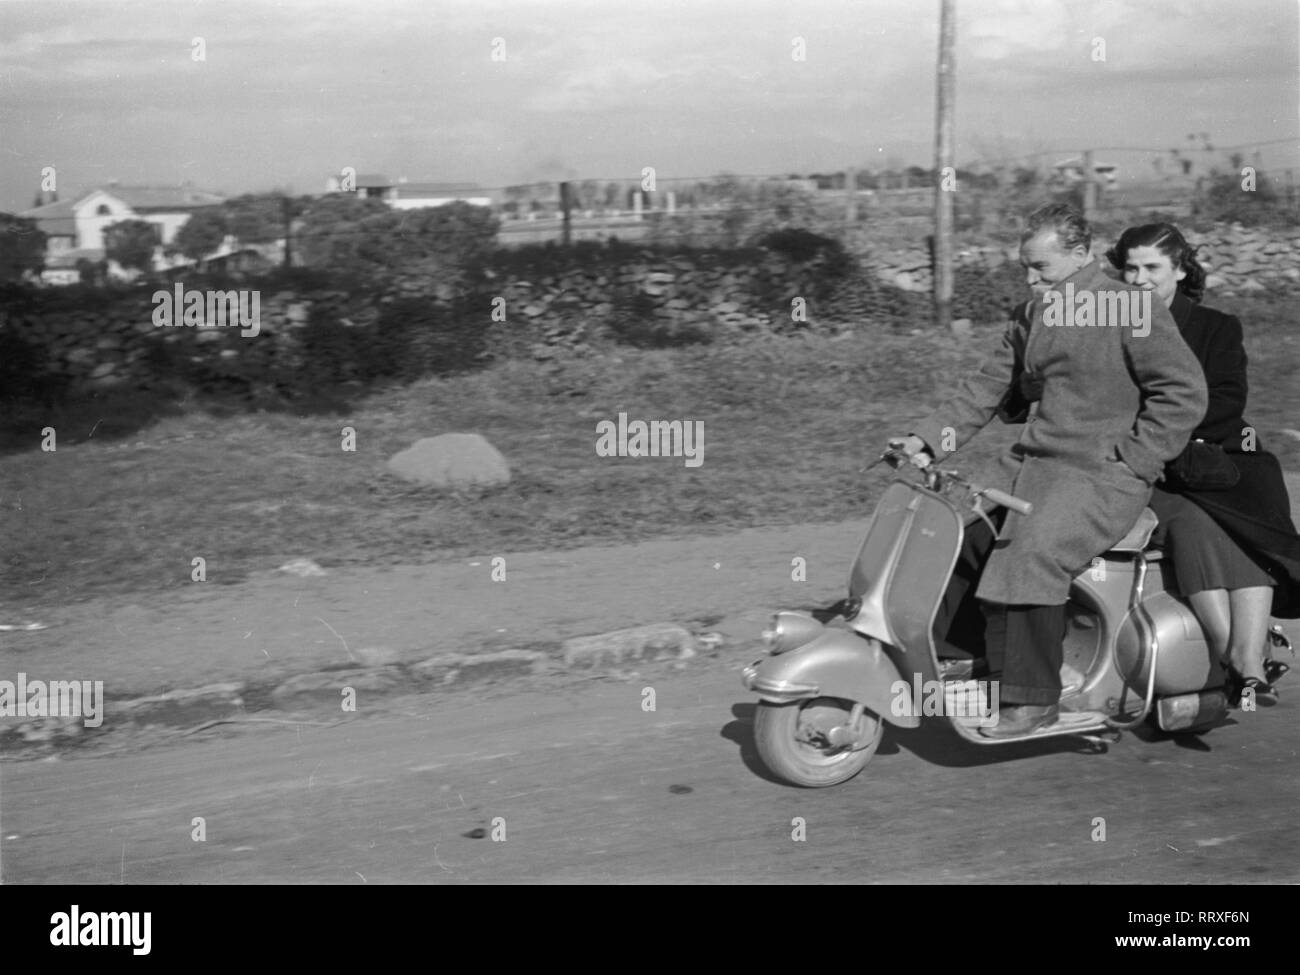 Reisen nach Rom - Italien 1950 - Paar fahren eine Vespa auf der Straße Via Appia Antica in Rom. Ein Paar fährt in einer Vespa auf der Via Appia Antica in Rom, Italien. Foto Erich Andres Stockfoto